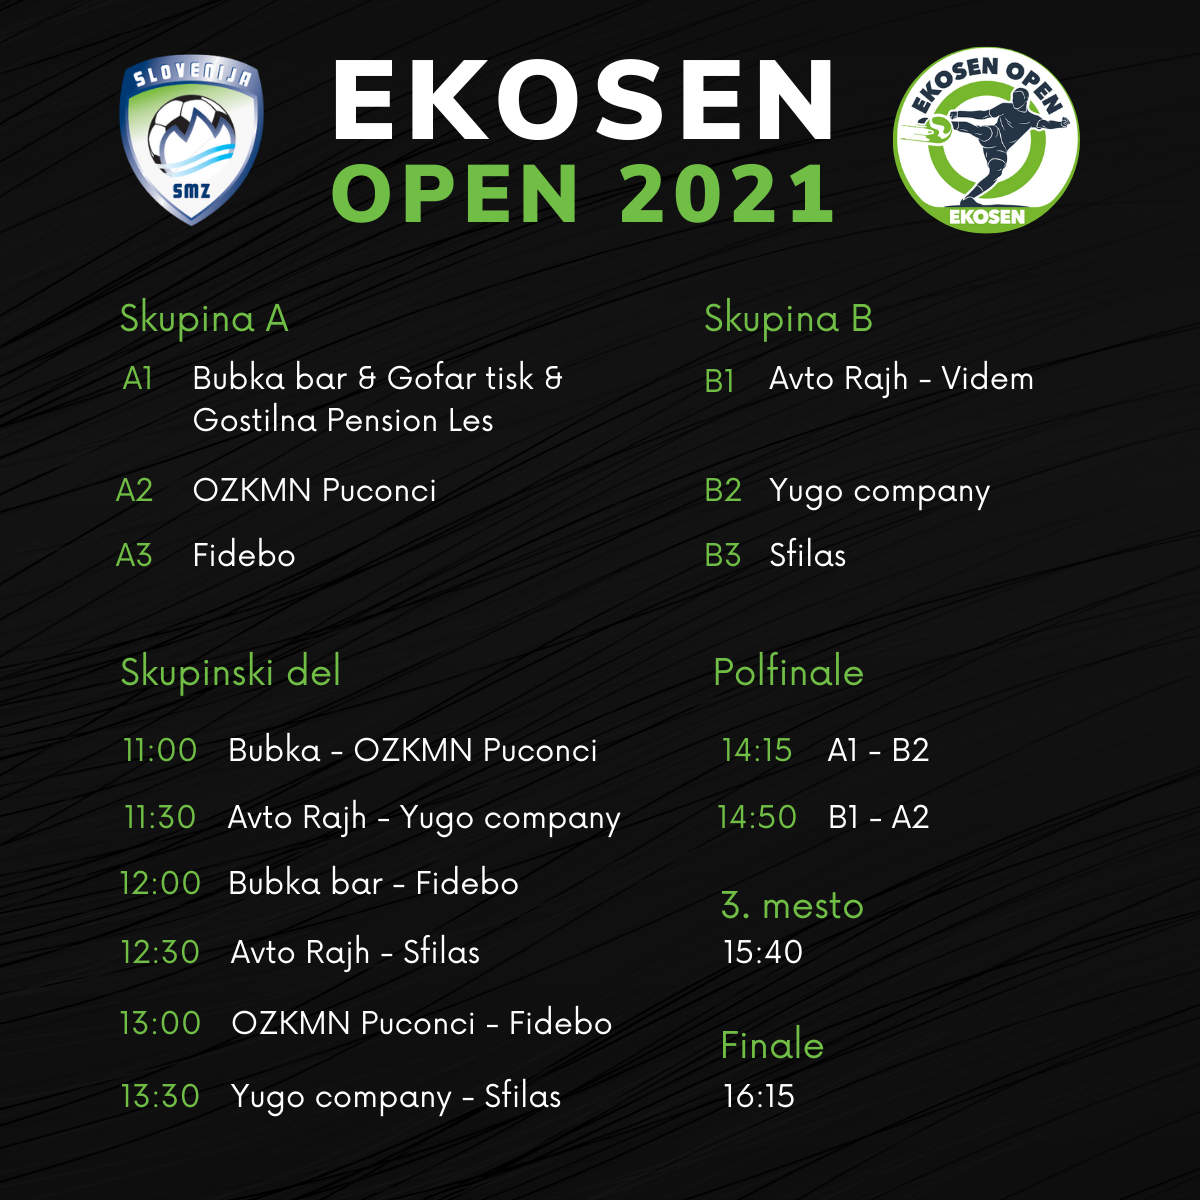 Ekosen Open